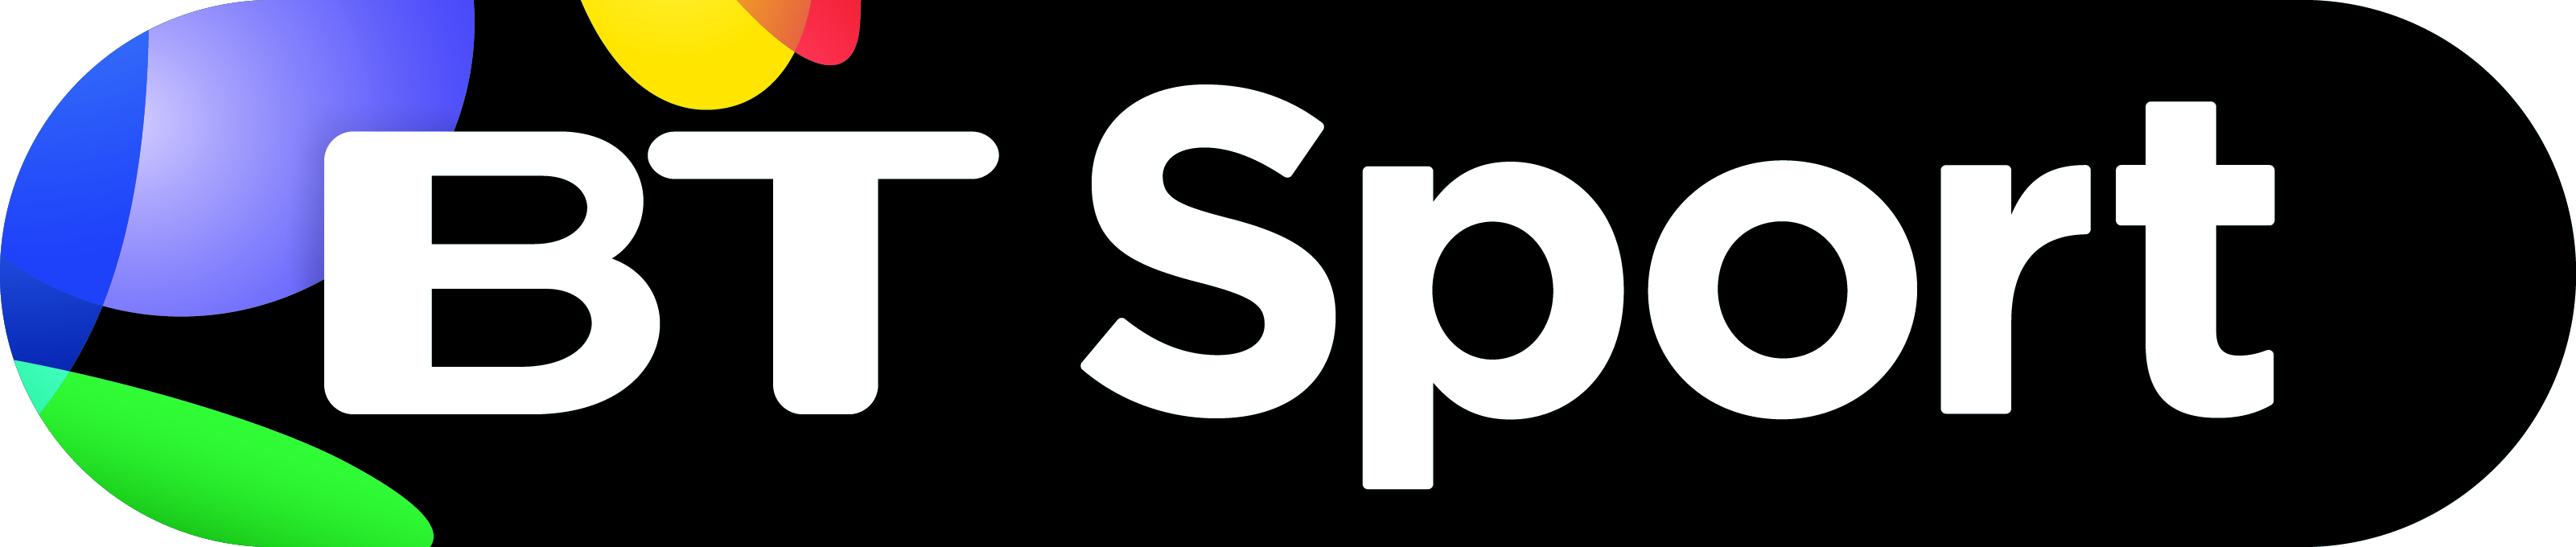 BT reveals BT Sport logo